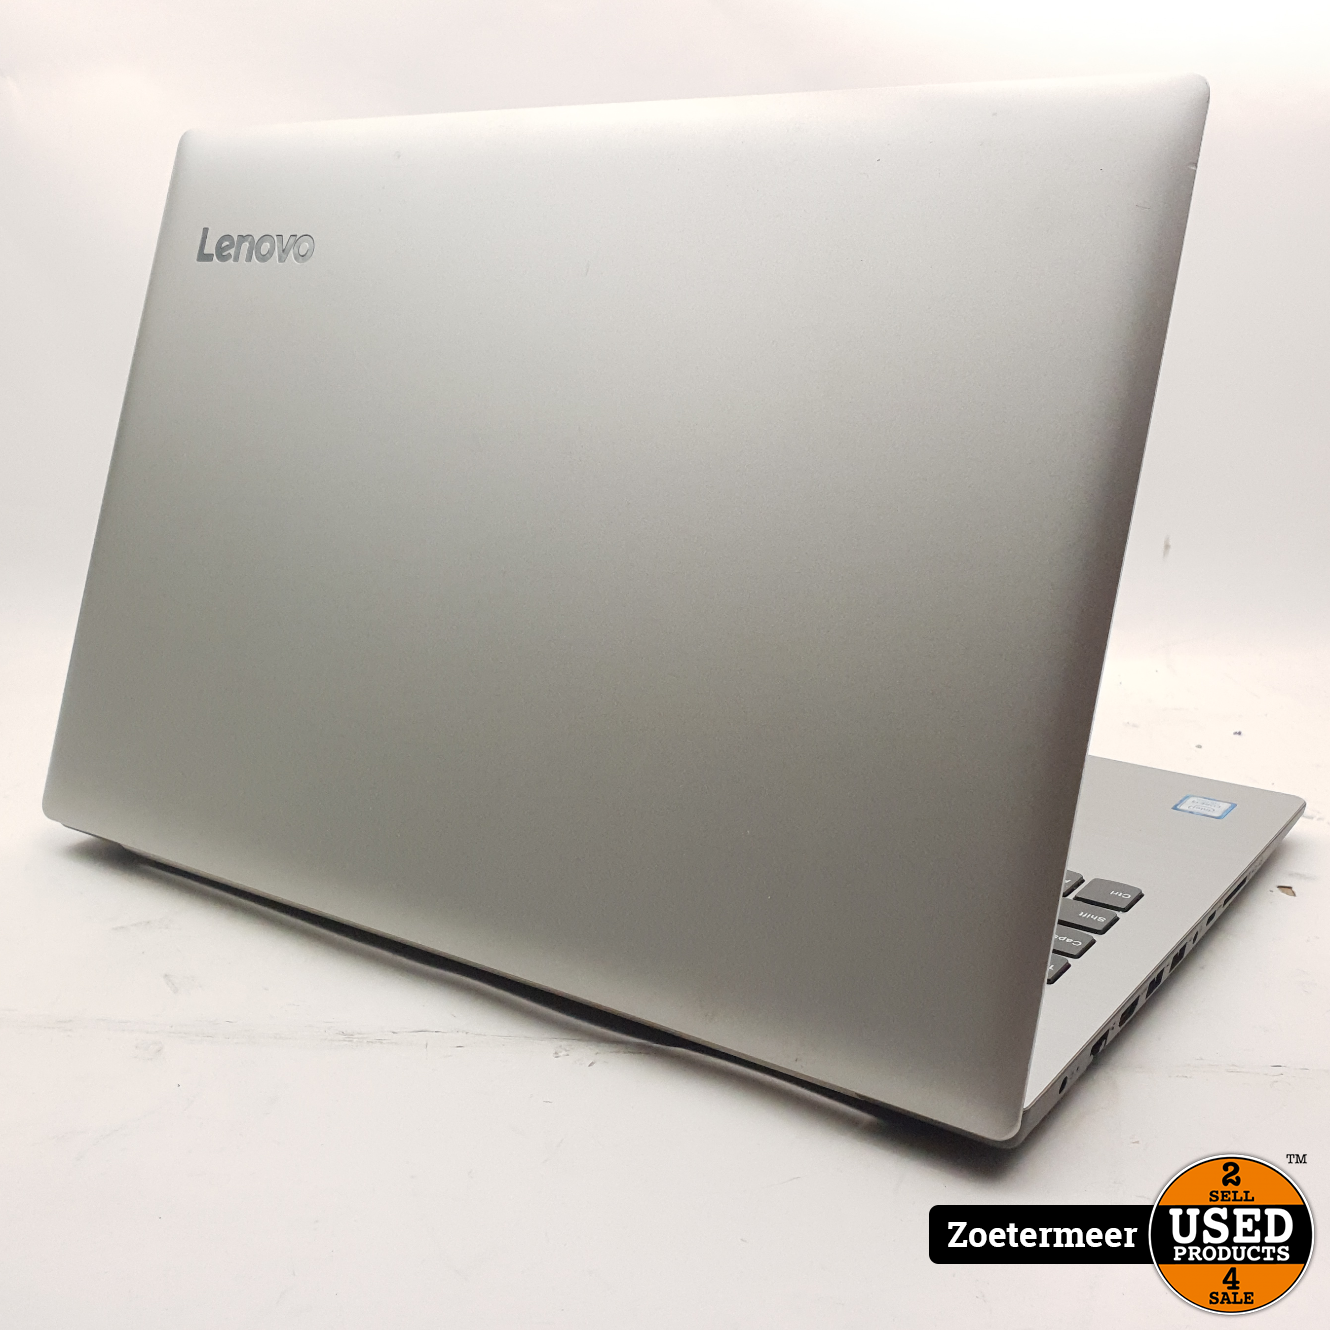 Lenovo Laptop I3 II 4GB II 128GB SSD Used Products Zoetermeer